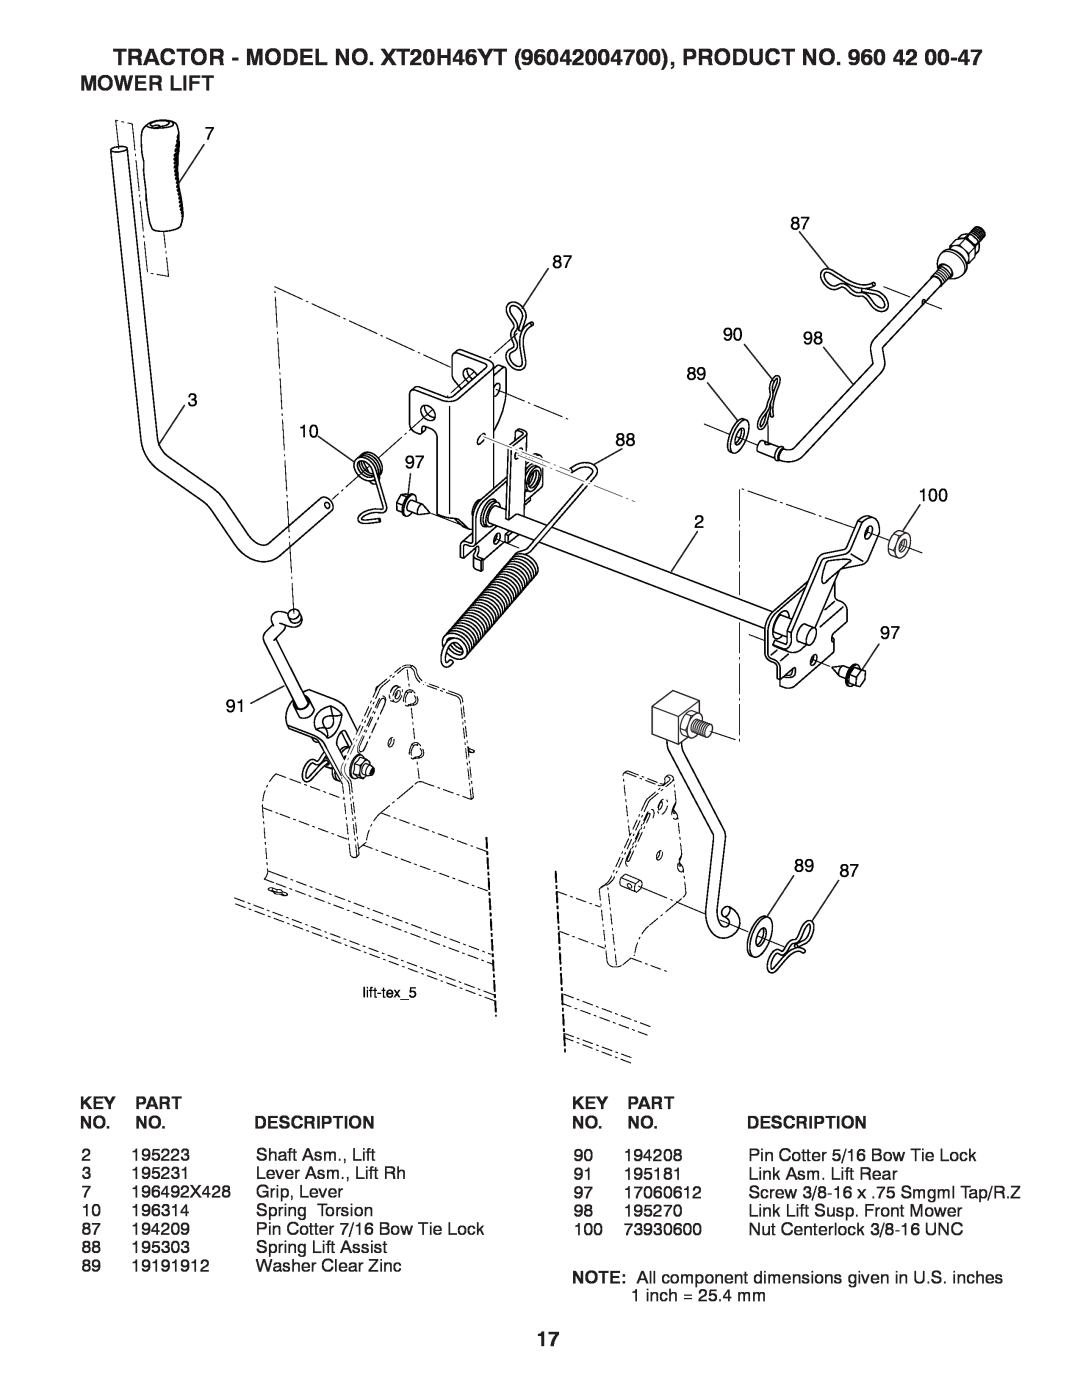 Poulan 412413 manual Mower Lift, 9098, TRACTOR - MODEL NO. XT20H46YT 96042004700, PRODUCT NO, Part, Description 